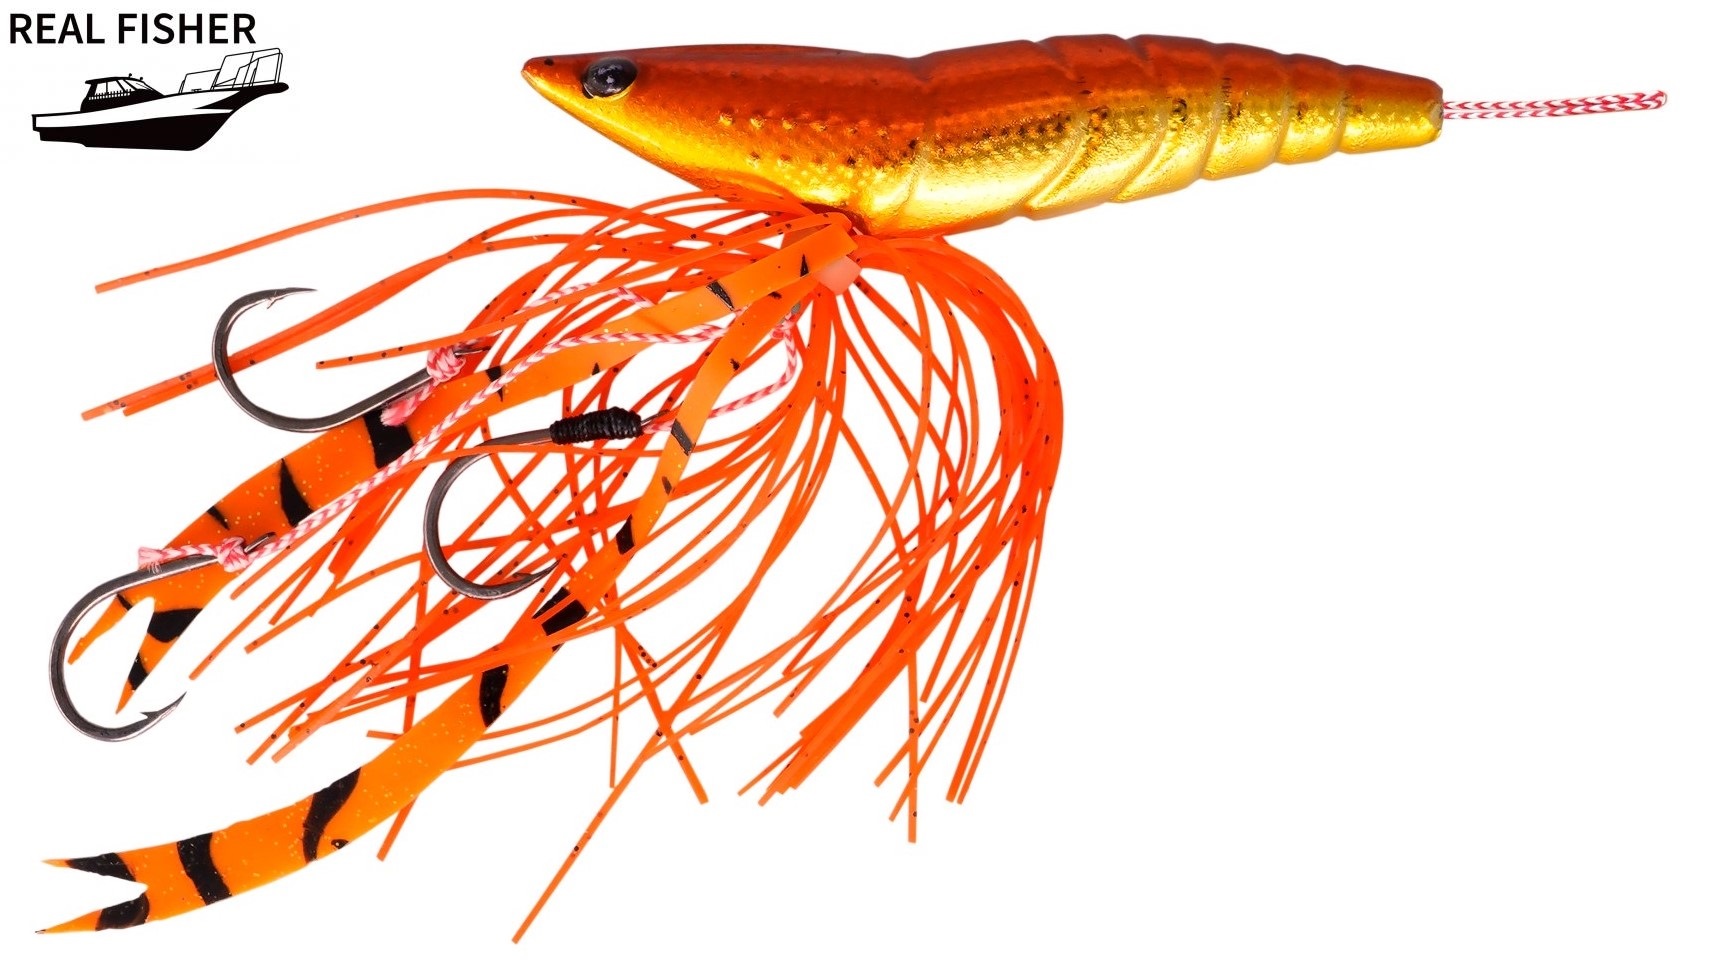 REAL FISHER 海老ラバ 80g オレンジ メタルジグの商品画像